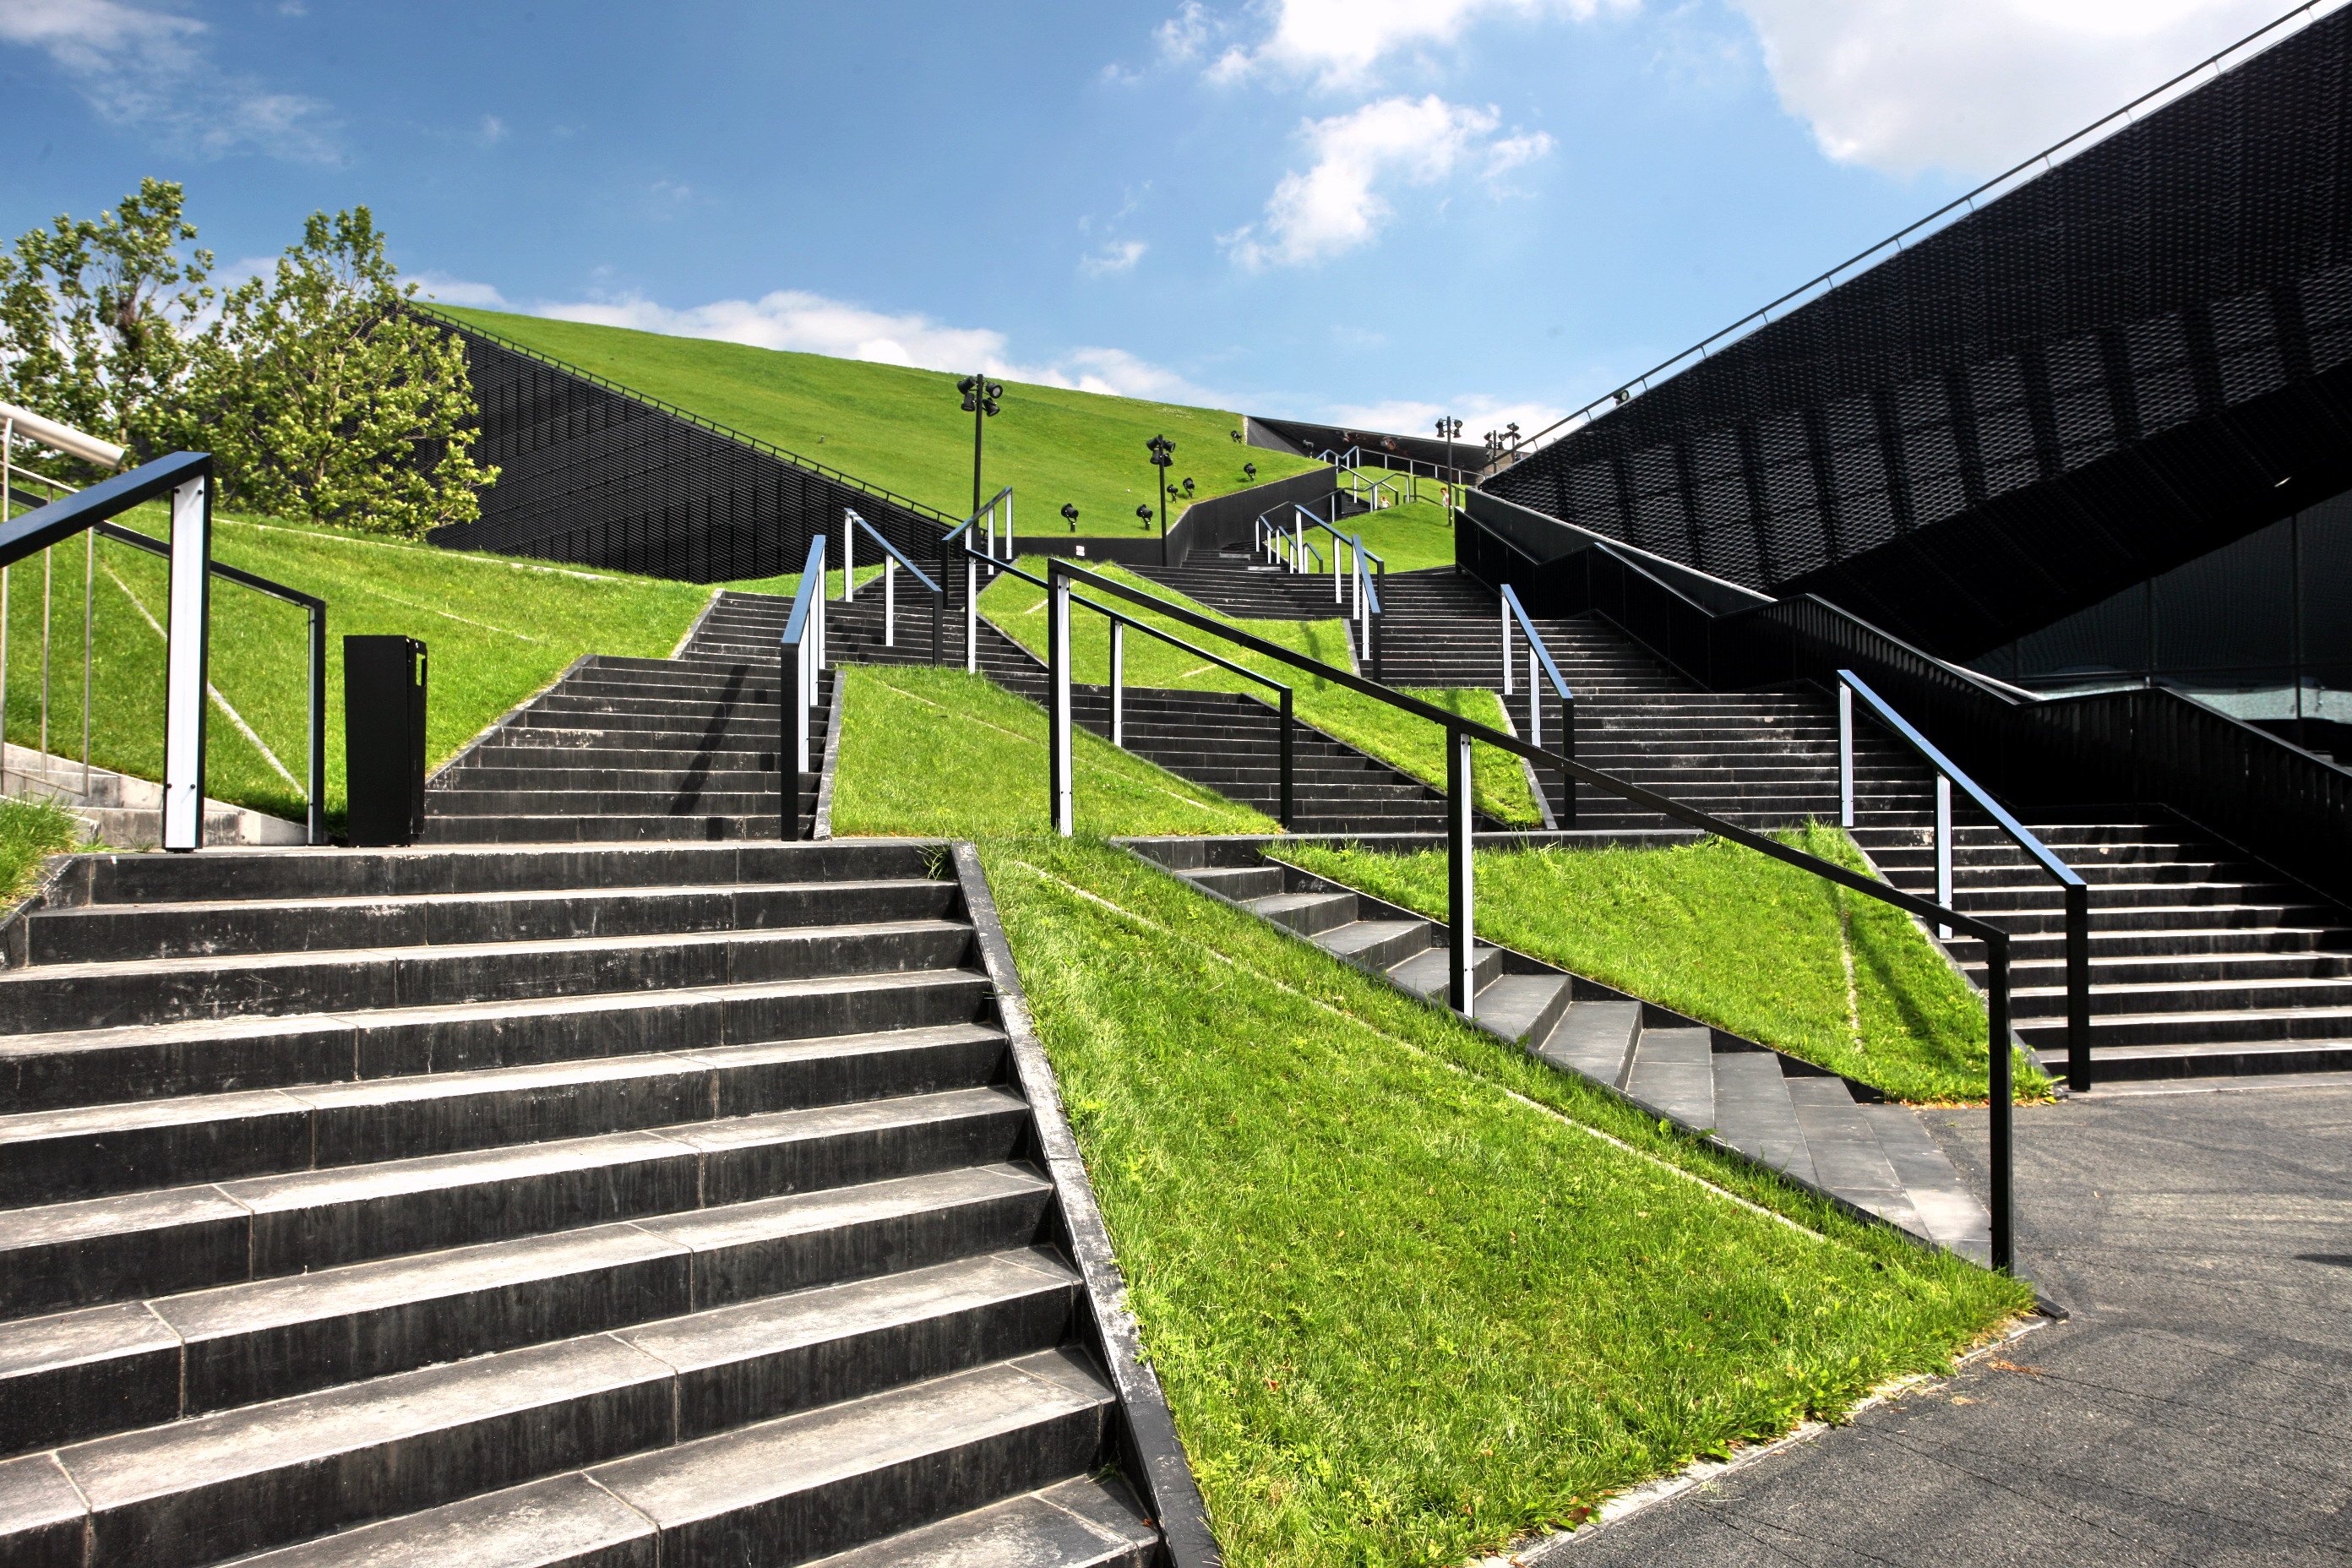 Treppen führen hinauf zu einem grünen Hügel